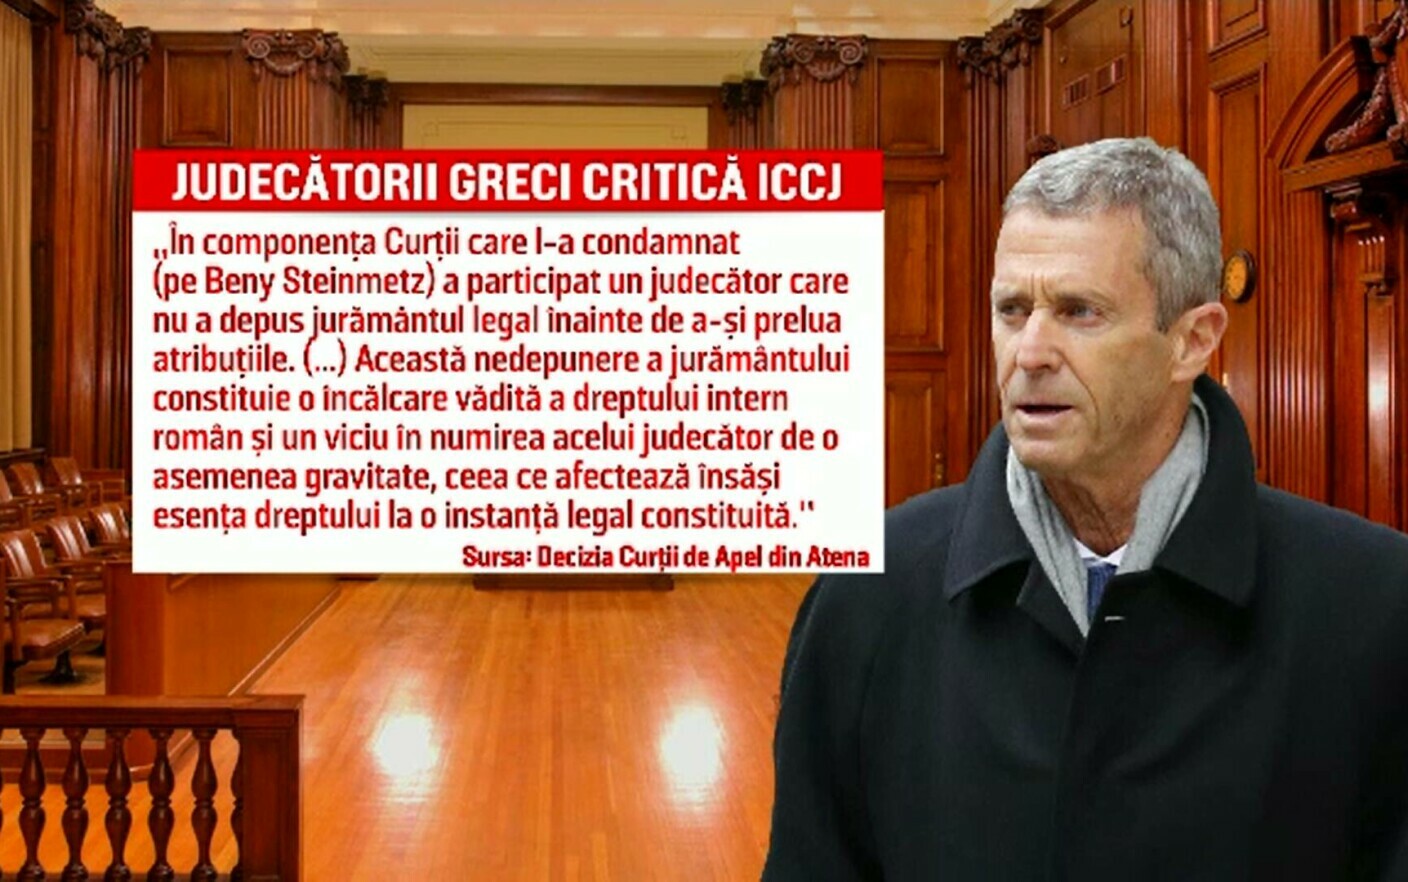 Πώς δικαιολόγησαν οι Έλληνες δικαστές την απόφαση να μην εκδοθεί ο δισεκατομμυριούχος Benny Steinmetz που καταδικάστηκε σε φυλάκιση στη Ρουμανία